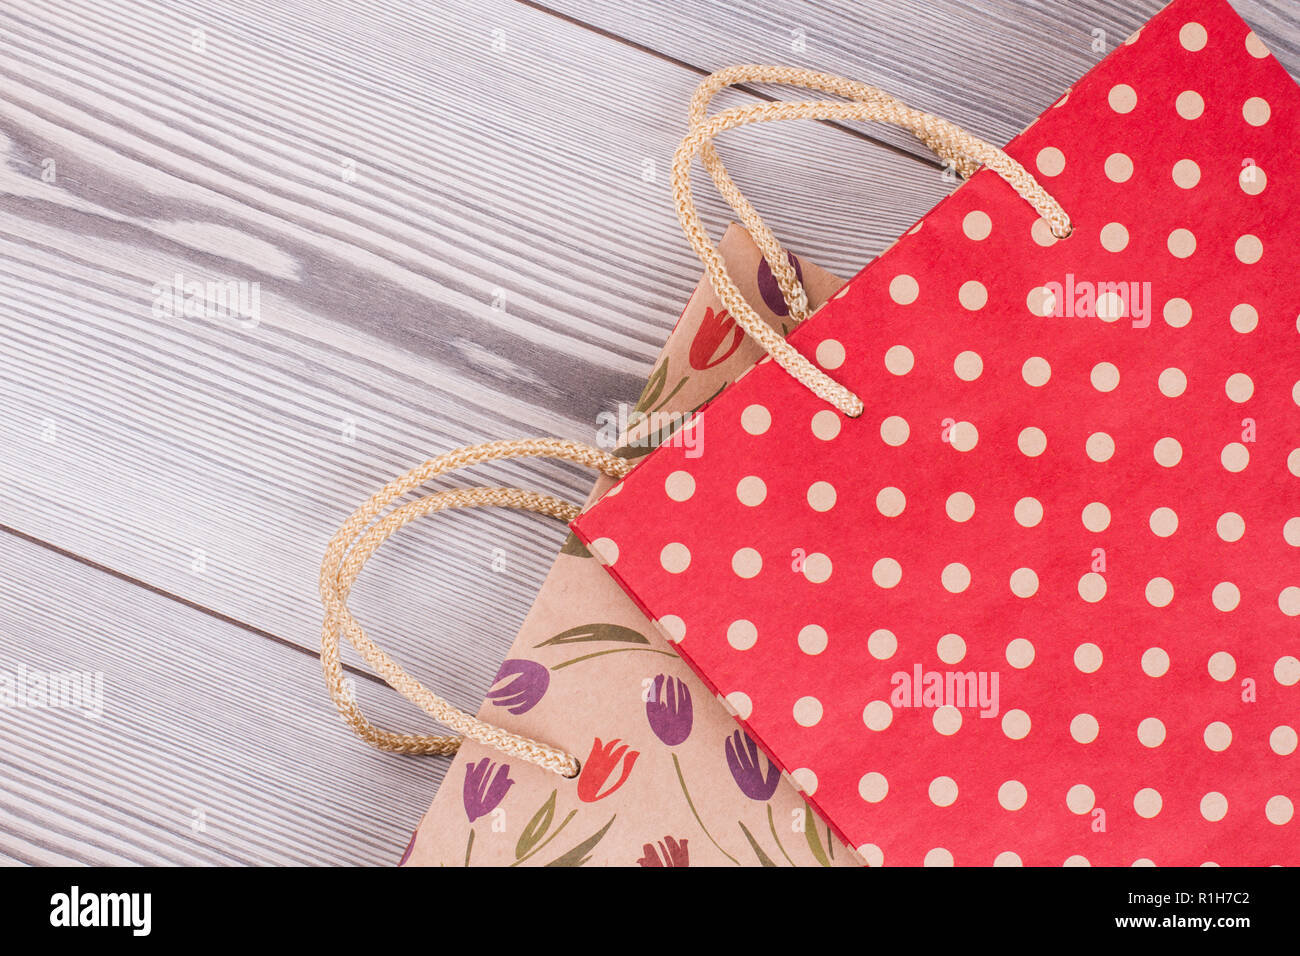 Cerrar el papel bolsas de regalo con asas de cuerda Fotografía de stock -  Alamy